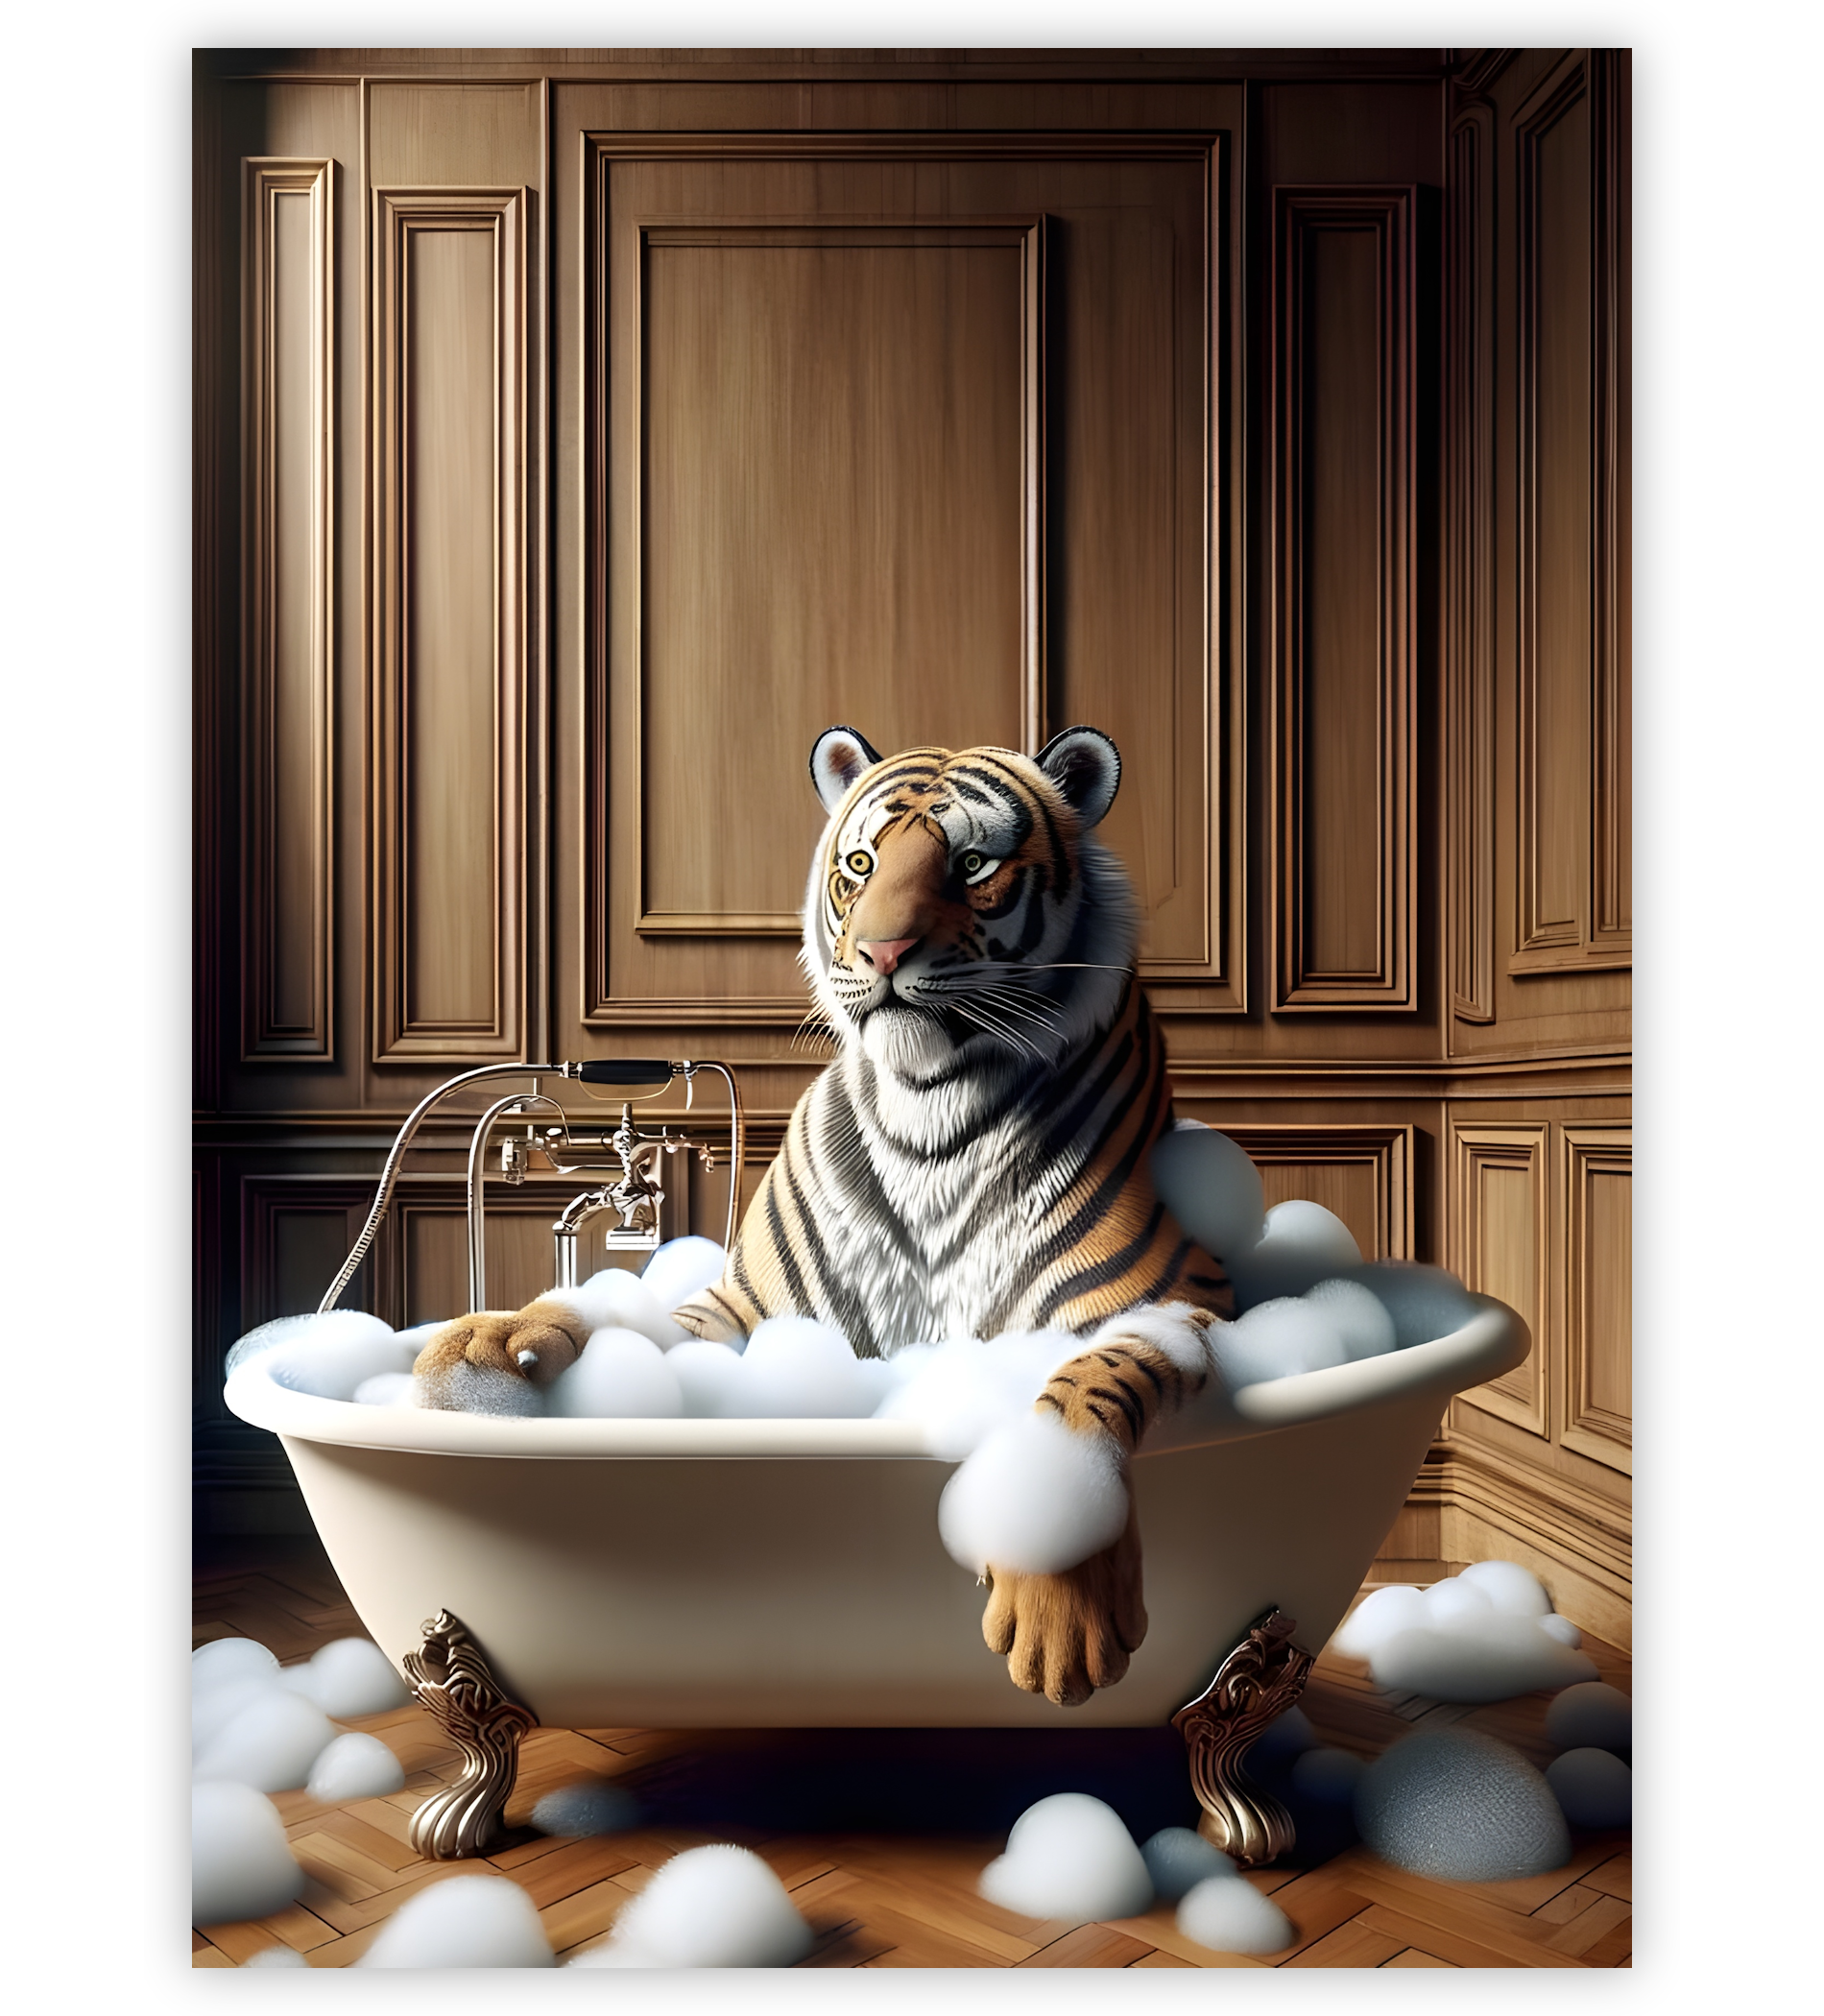 Poster, Wandbild von Tiger in Badewanne